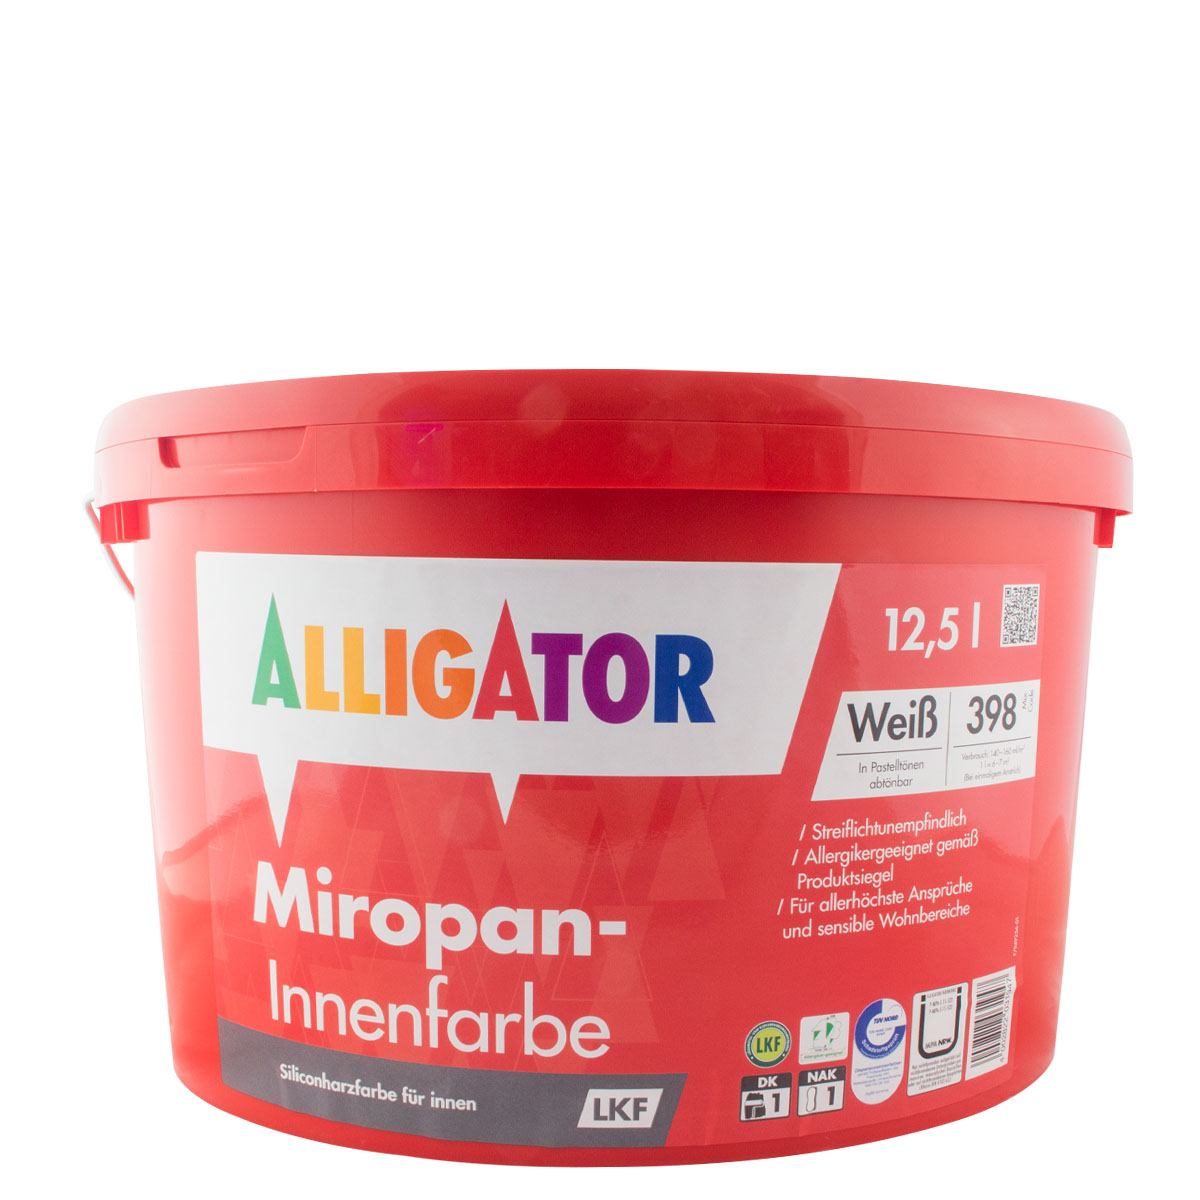 Alligator Miropan Innenfarbe LKF 12,5L weiß, hochdeckende Wandfarbe, Siliconharz-Farbe